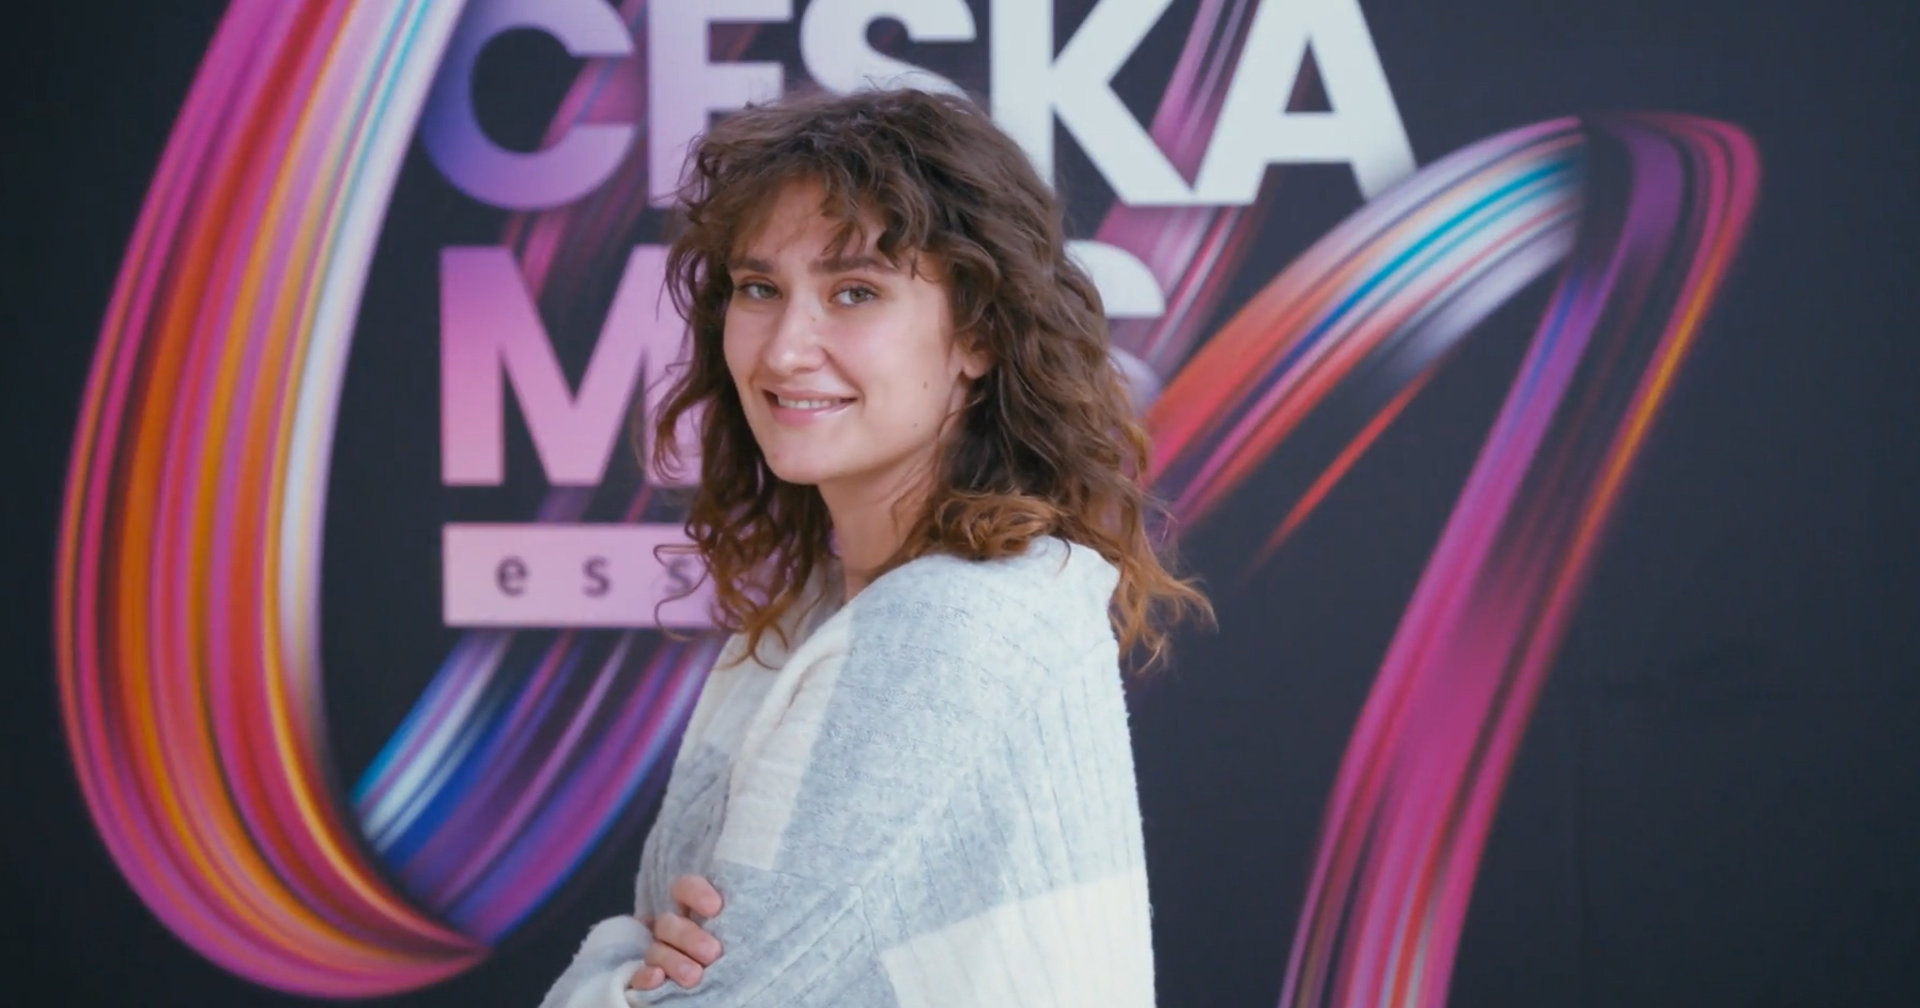 Semifinalistka České Miss Essens Marie Danči